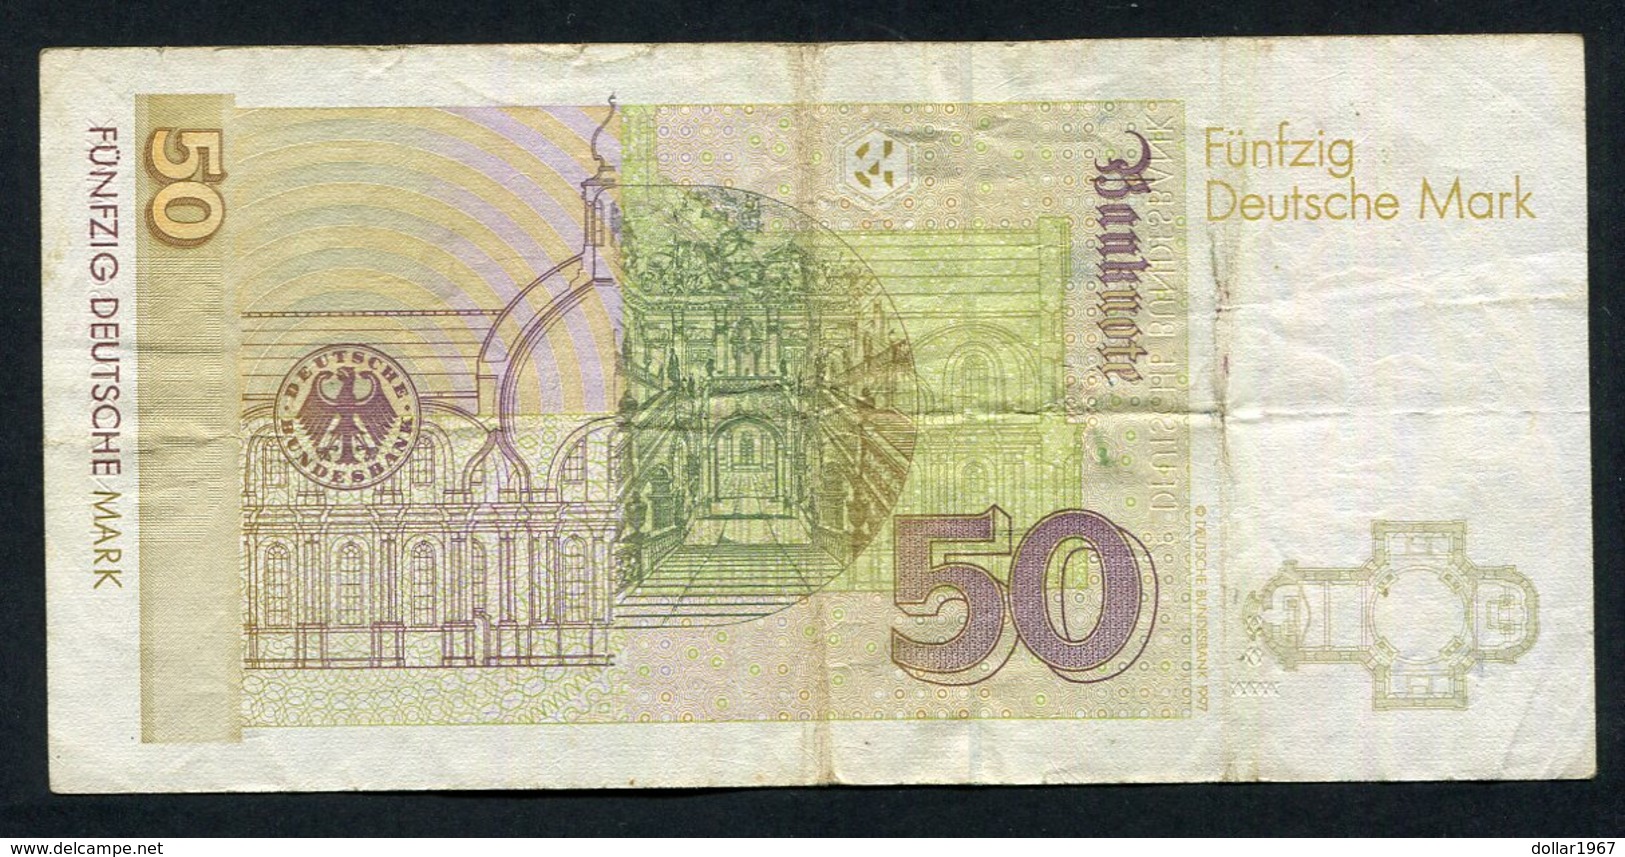 50 Dm / Deutsche Mark / Bundesbanknote 2-1-1996 - See The 2 Scans For Condition.(Originalscan ) - 50 DM